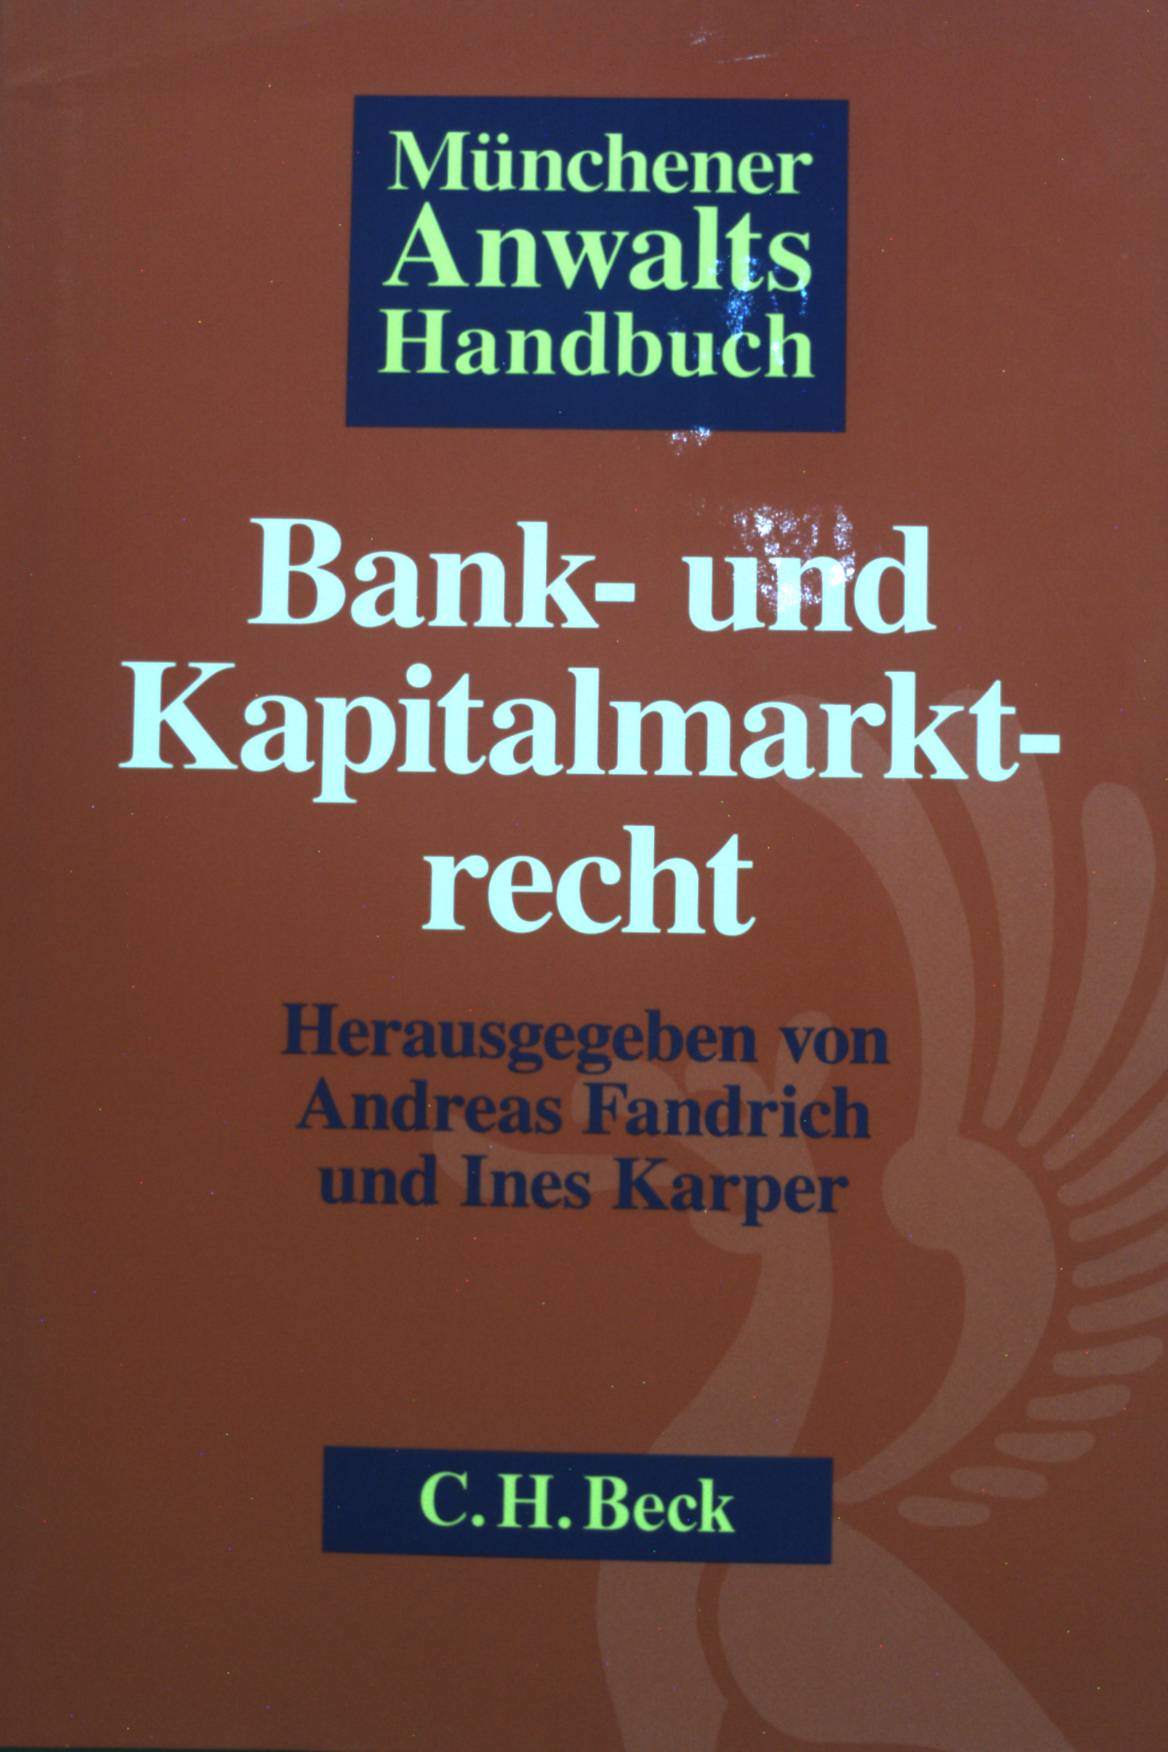 Münchener Anwalts-Handbuch Bank- und Kapitalmarktrecht. - Fandrich, Andreas und Joachim Bloehs